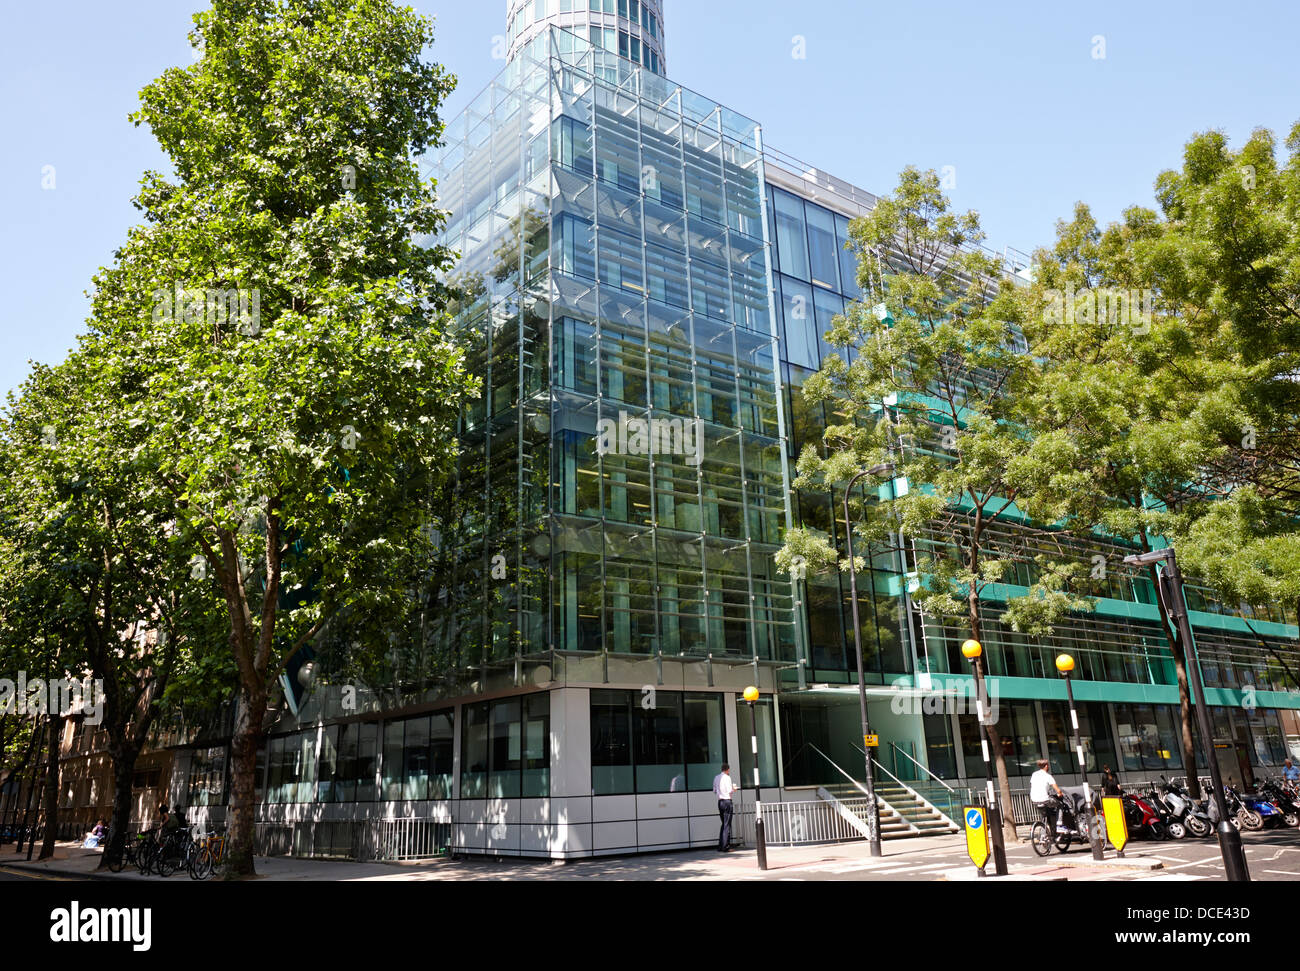 13 bureaux arup, rue Fitzroy acquis par Workspace group plc London England UK Banque D'Images